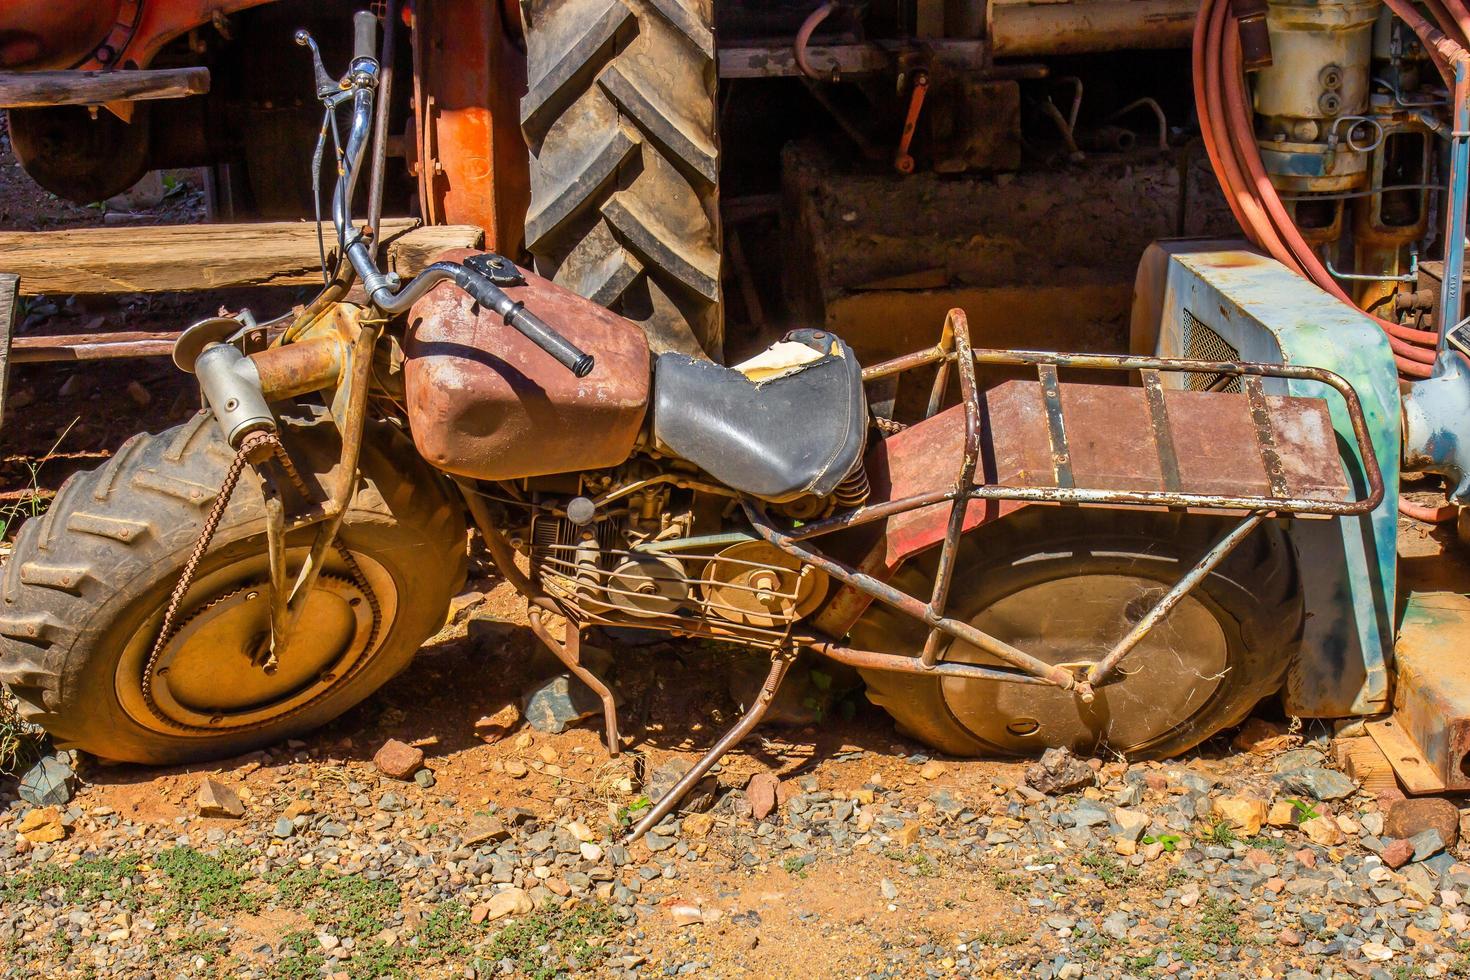 moto velha enferrujada no ferro-velho foto